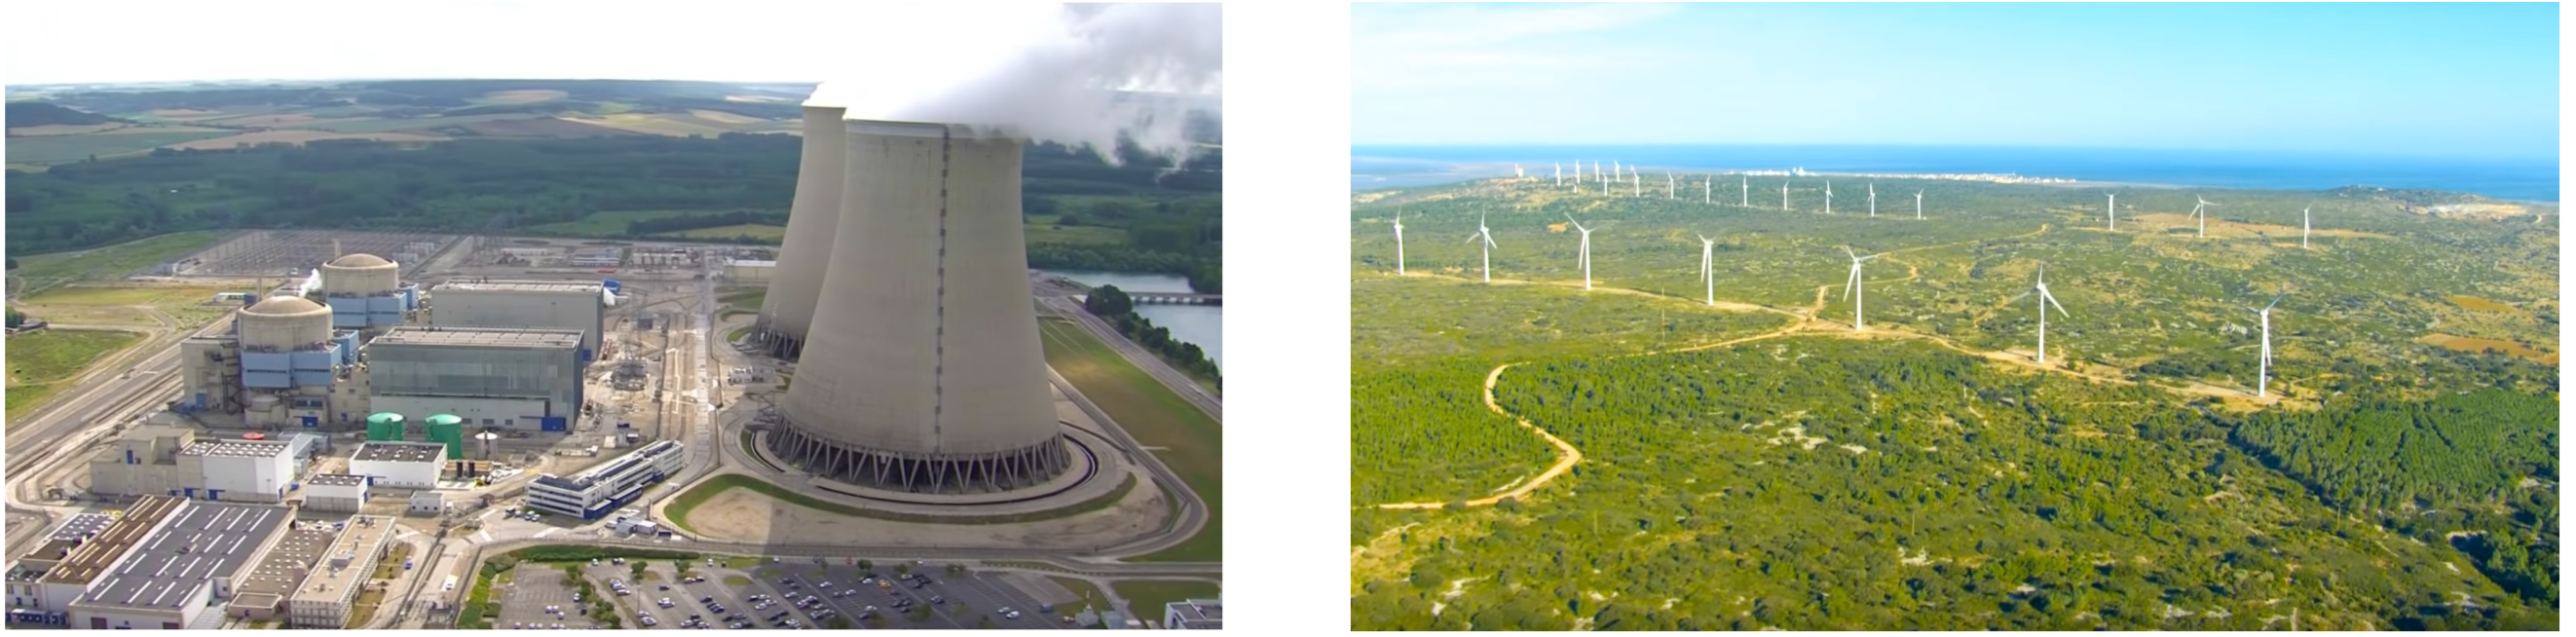 Centrale nucléaire et parc éolien